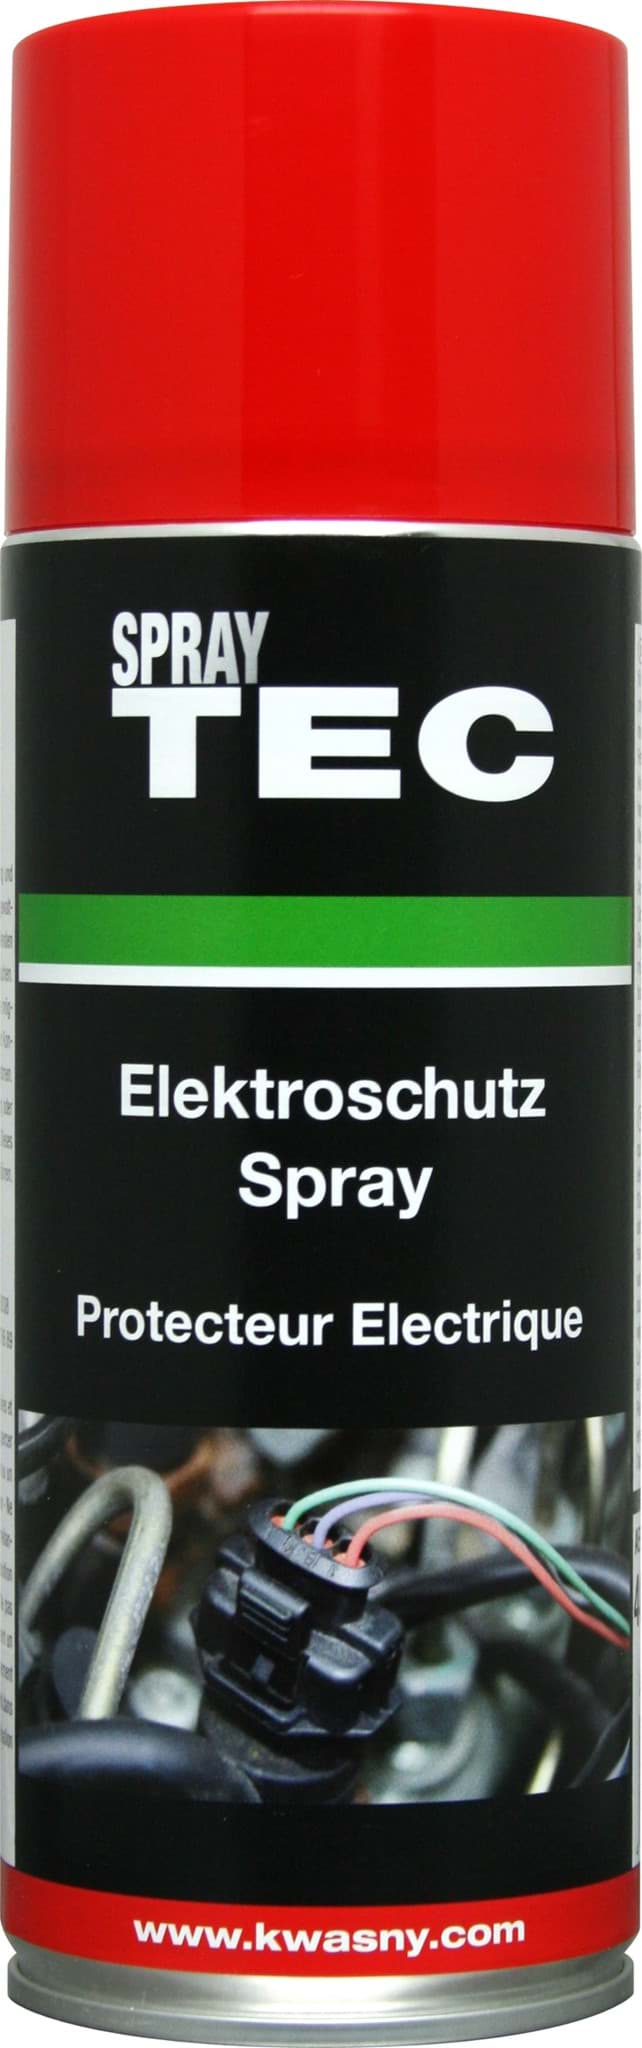 Obraz Elektroschutz-Spray 400ml SprayTEC 235003